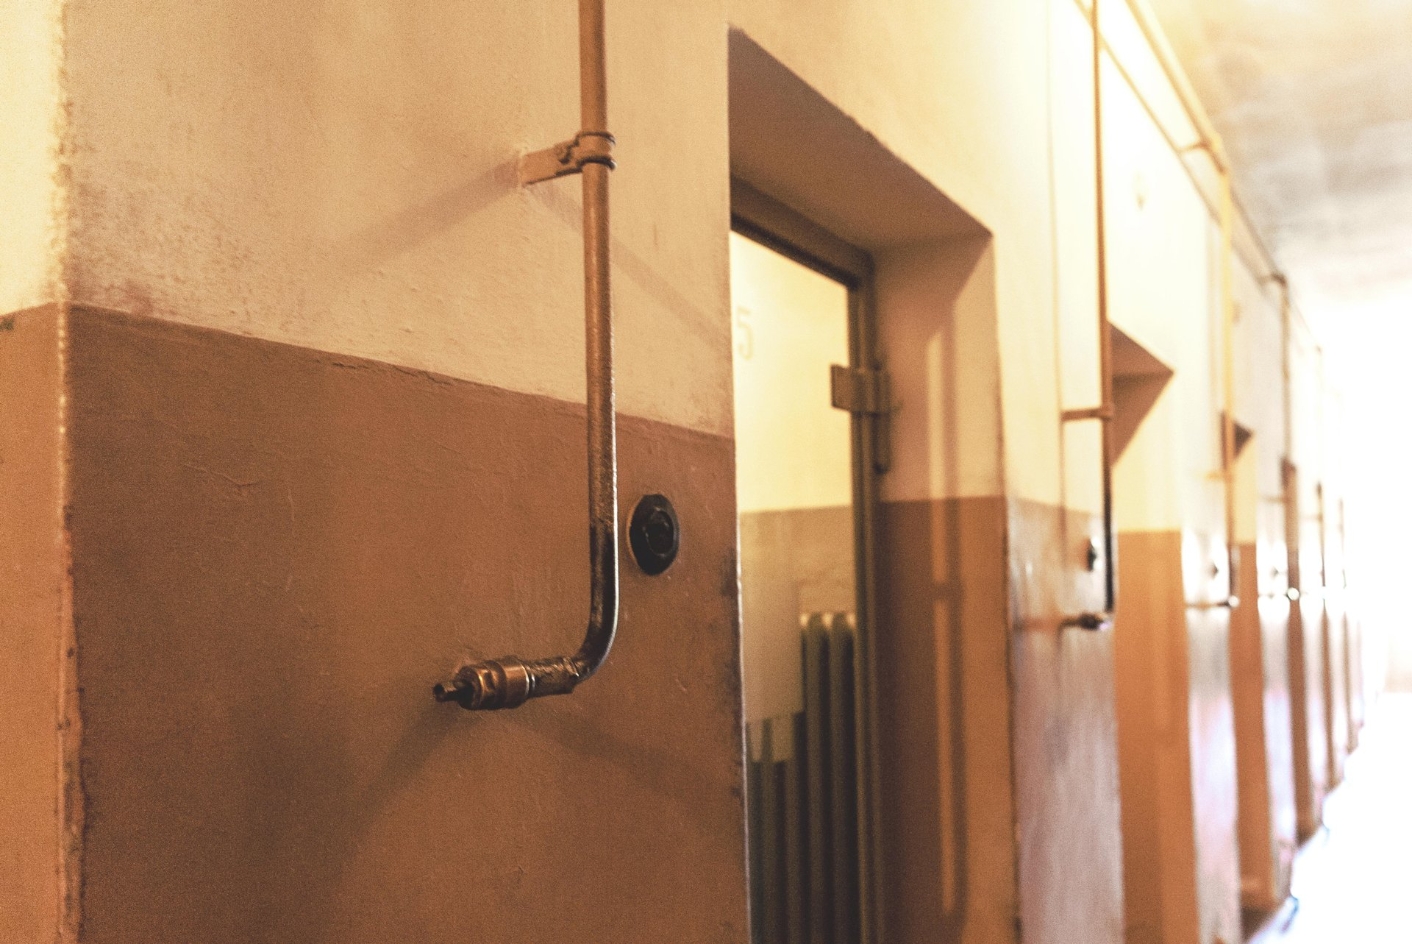 Eine Reihe von Zellentüren. Neben jeder Tür ein dünnes Metallrohr, das zur Heinzungssteuerung gehört. Darüber an der Wand ist das Drehrad der Heizungssteuerung angebracht.